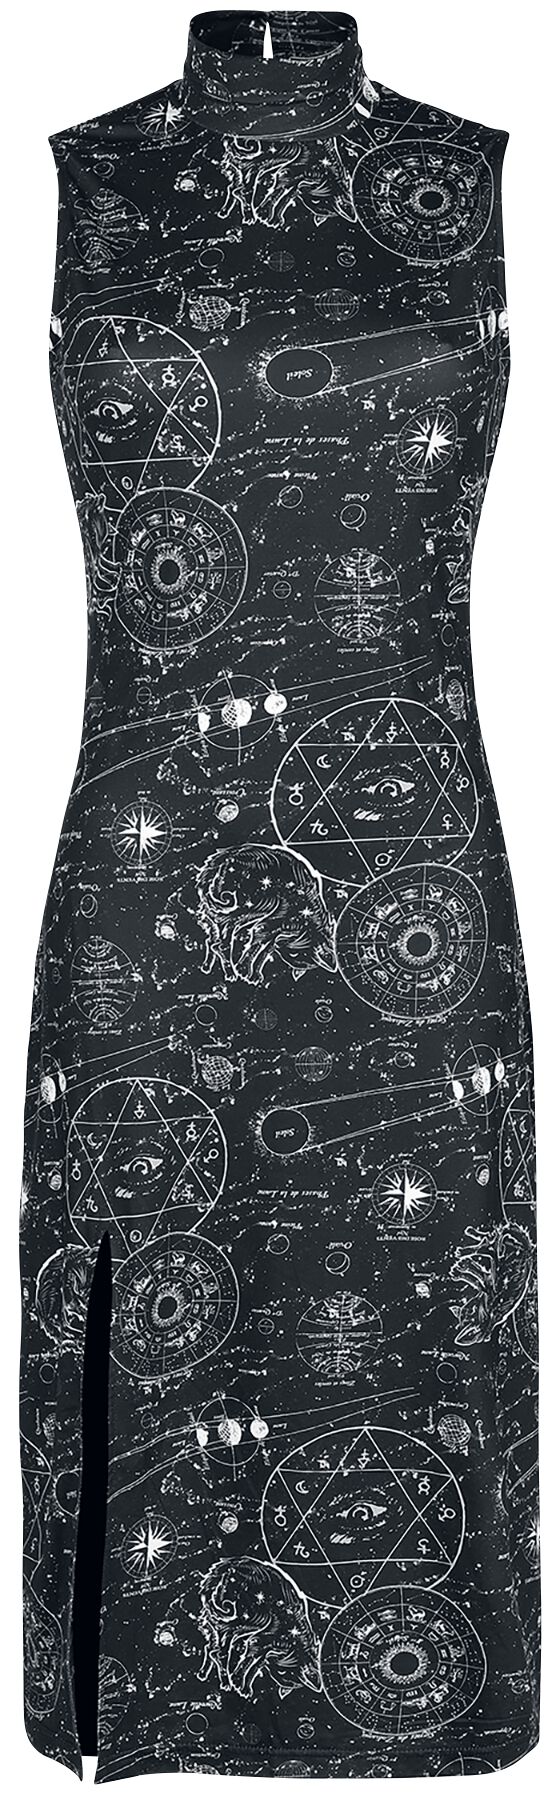 Jawbreaker - Gothic Kleid knielang - Alchemy Cat Print Midi Cut Out Dress - XS bis XXL - für Damen - Größe M - schwarz/weiß